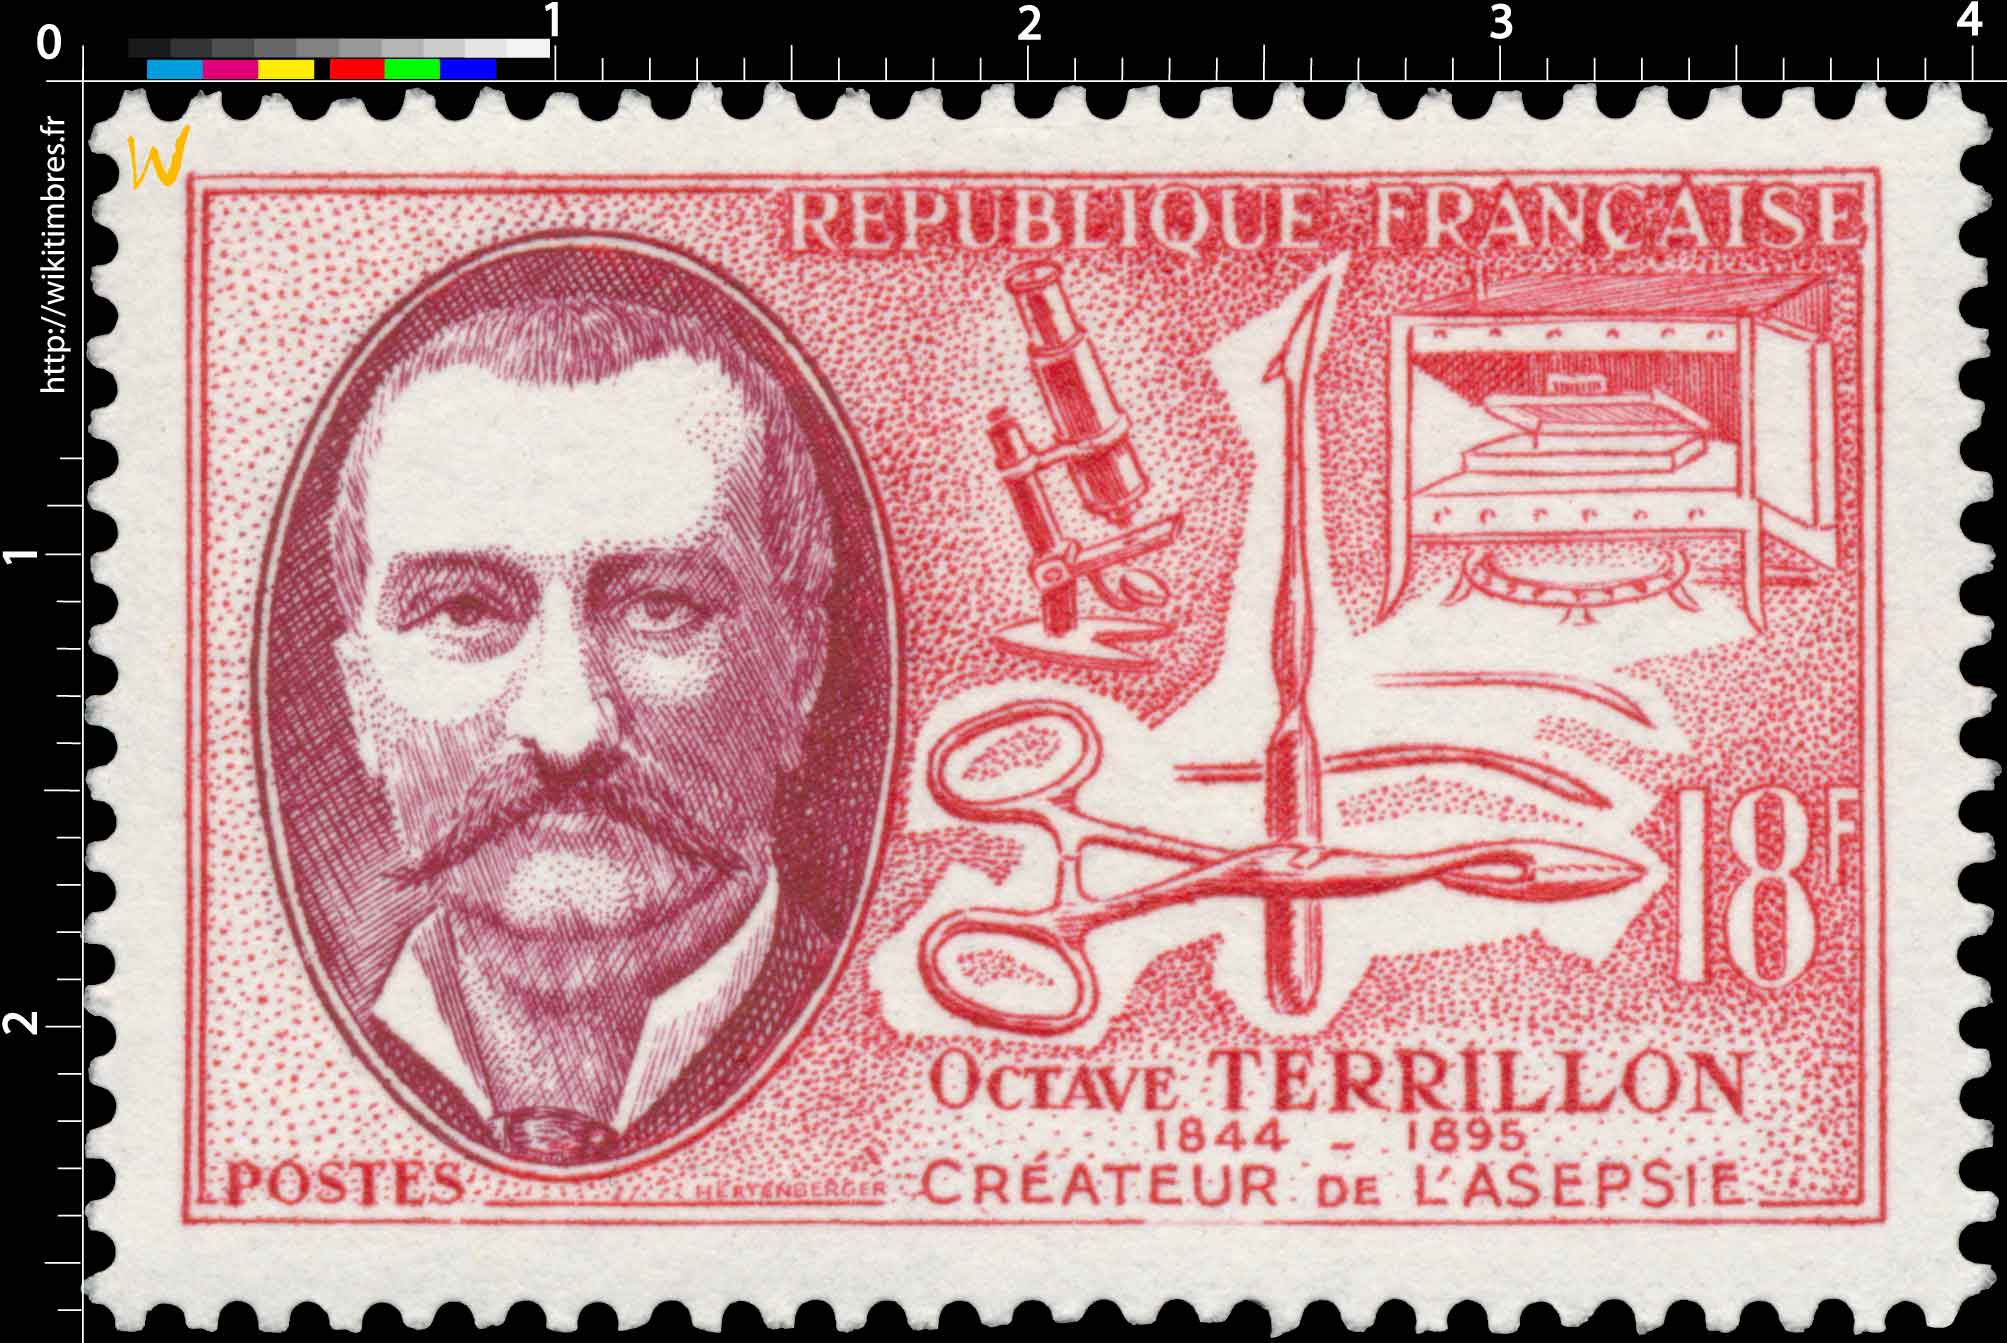 OCTAVE TERRILLON 1844-1895 CRÉATEUR DE L’ASEPSIE